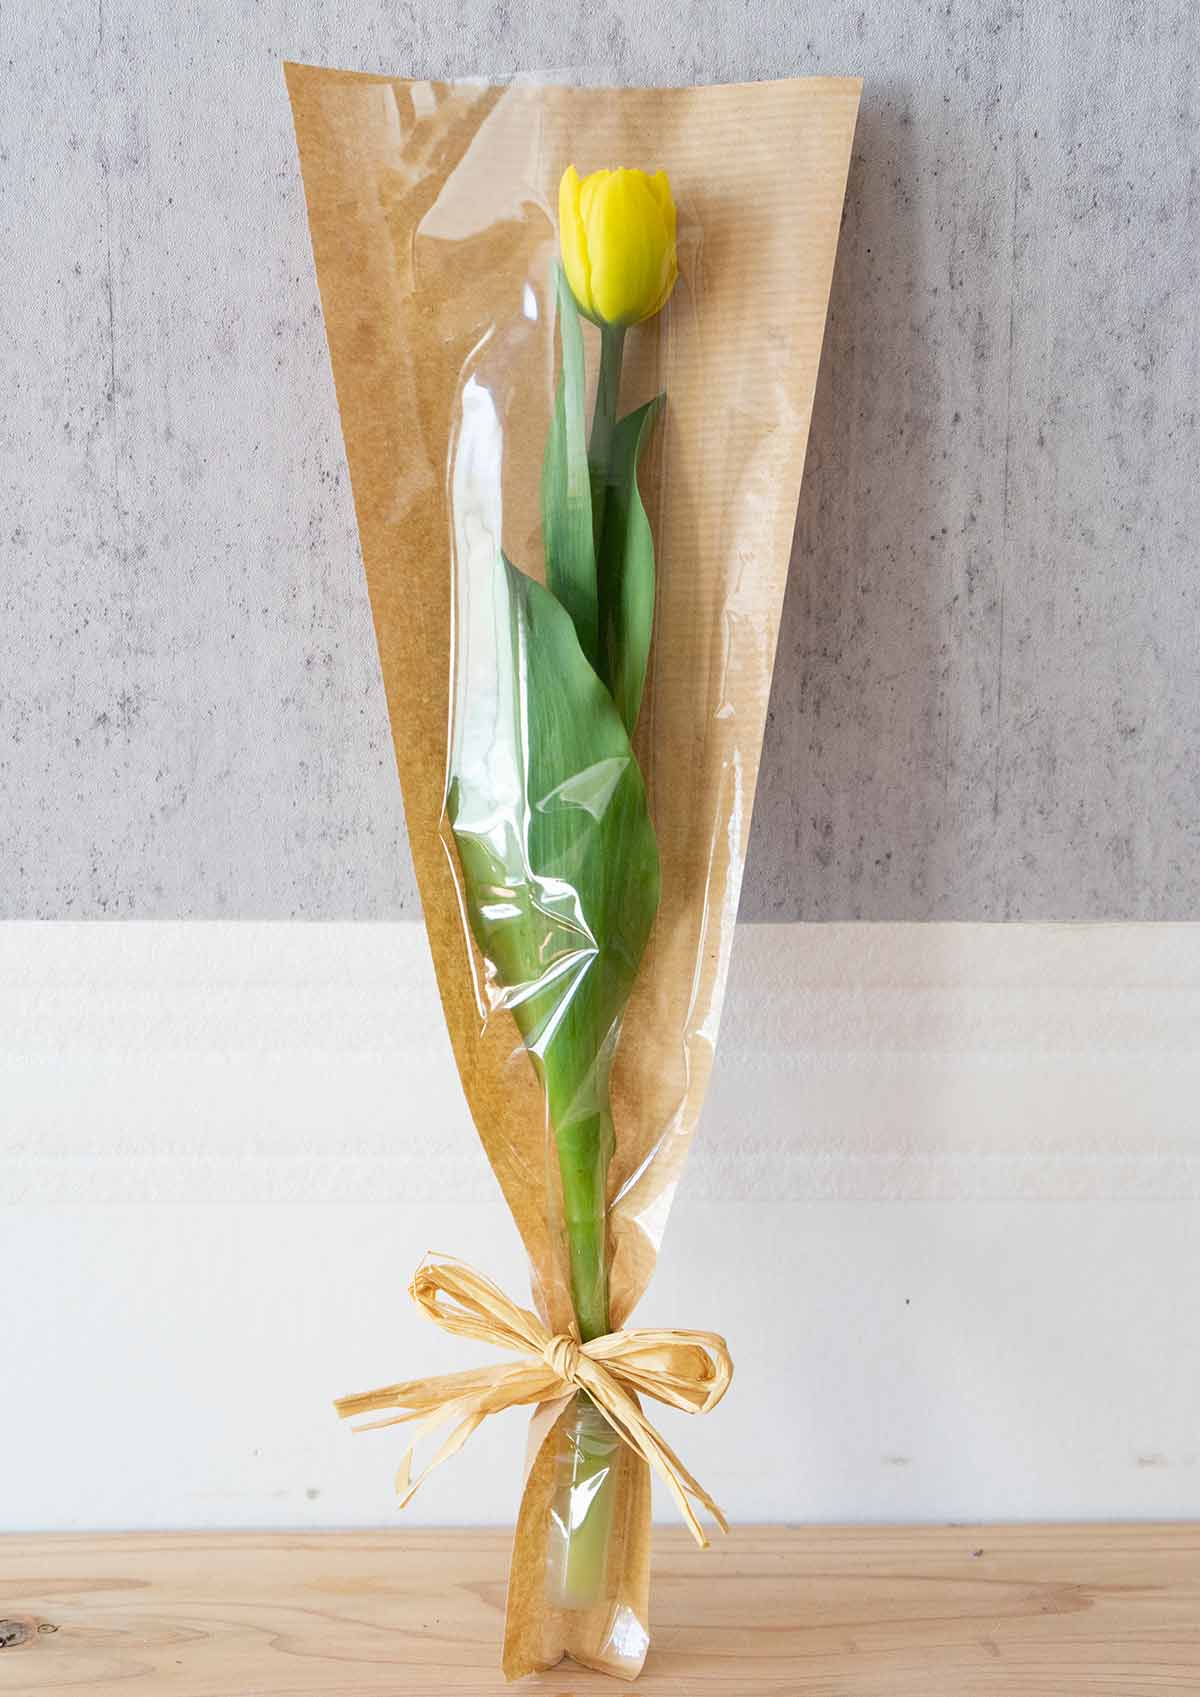 卒業 卒業のお祝いに贈る花 花通販ギフト配達 お花の窓口 法人に対応